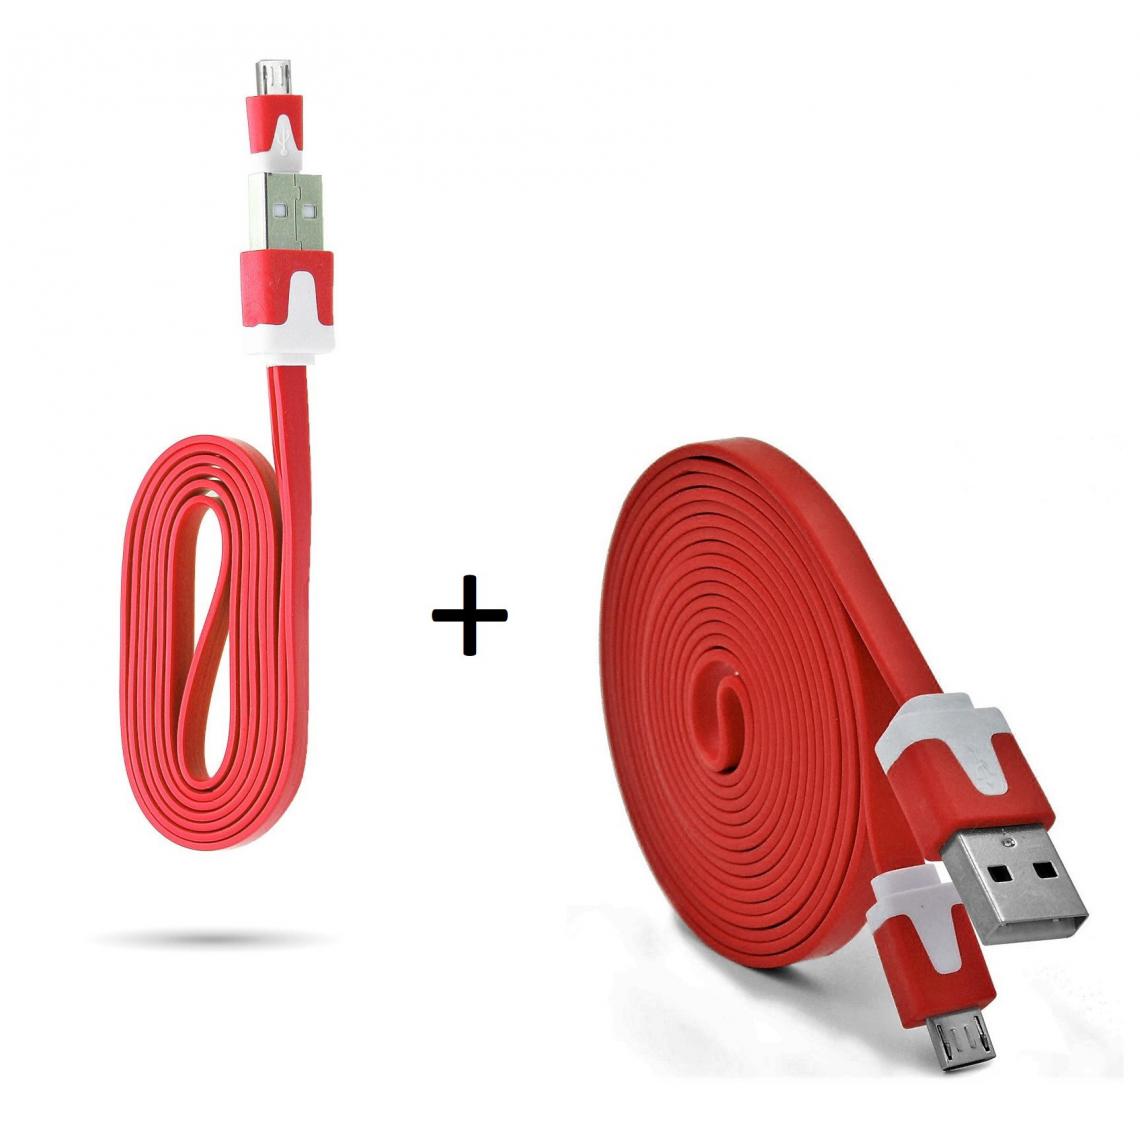 Shot - Pack Chargeur pour "SAMSUNG Galaxy A01" Smartphone Micro USB (Cable Noodle 3m + Cable Noodle 1m) Android (ROUGE) - Chargeur secteur téléphone